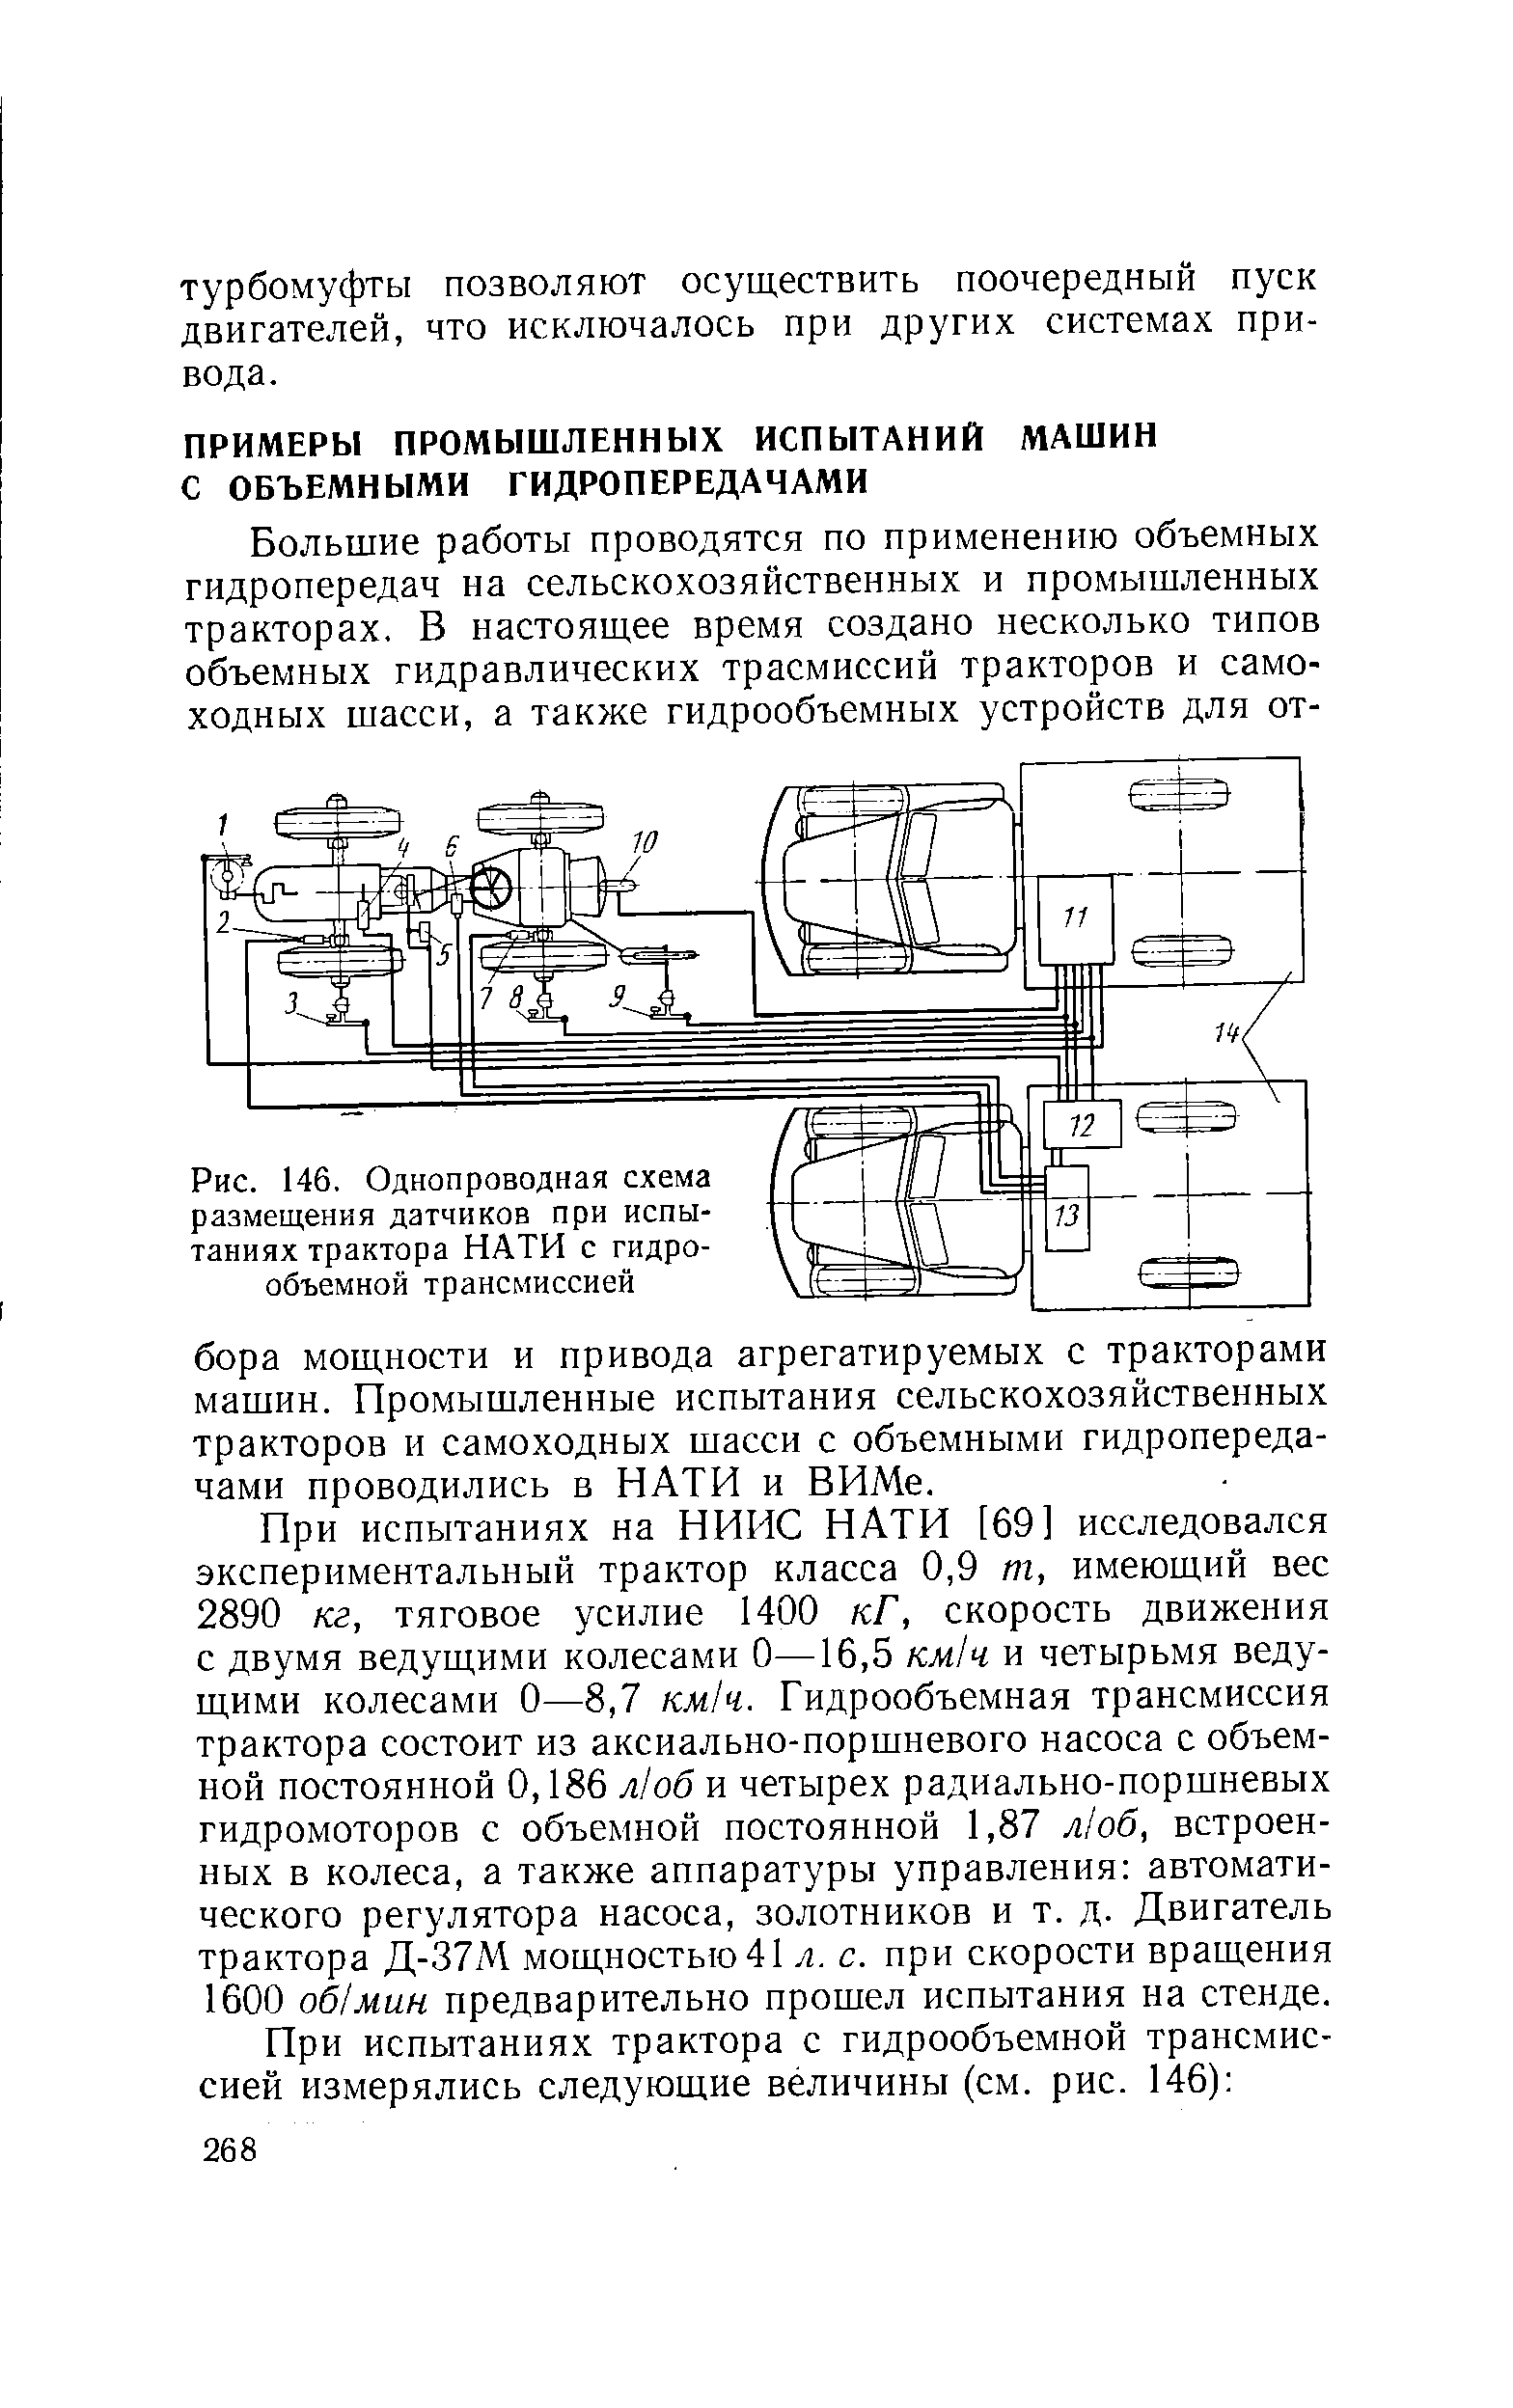 Рис. 146. Однопроводная схема размещения датчиков при испытаниях трактора НАТИ с гидрообъемной трансмиссией
